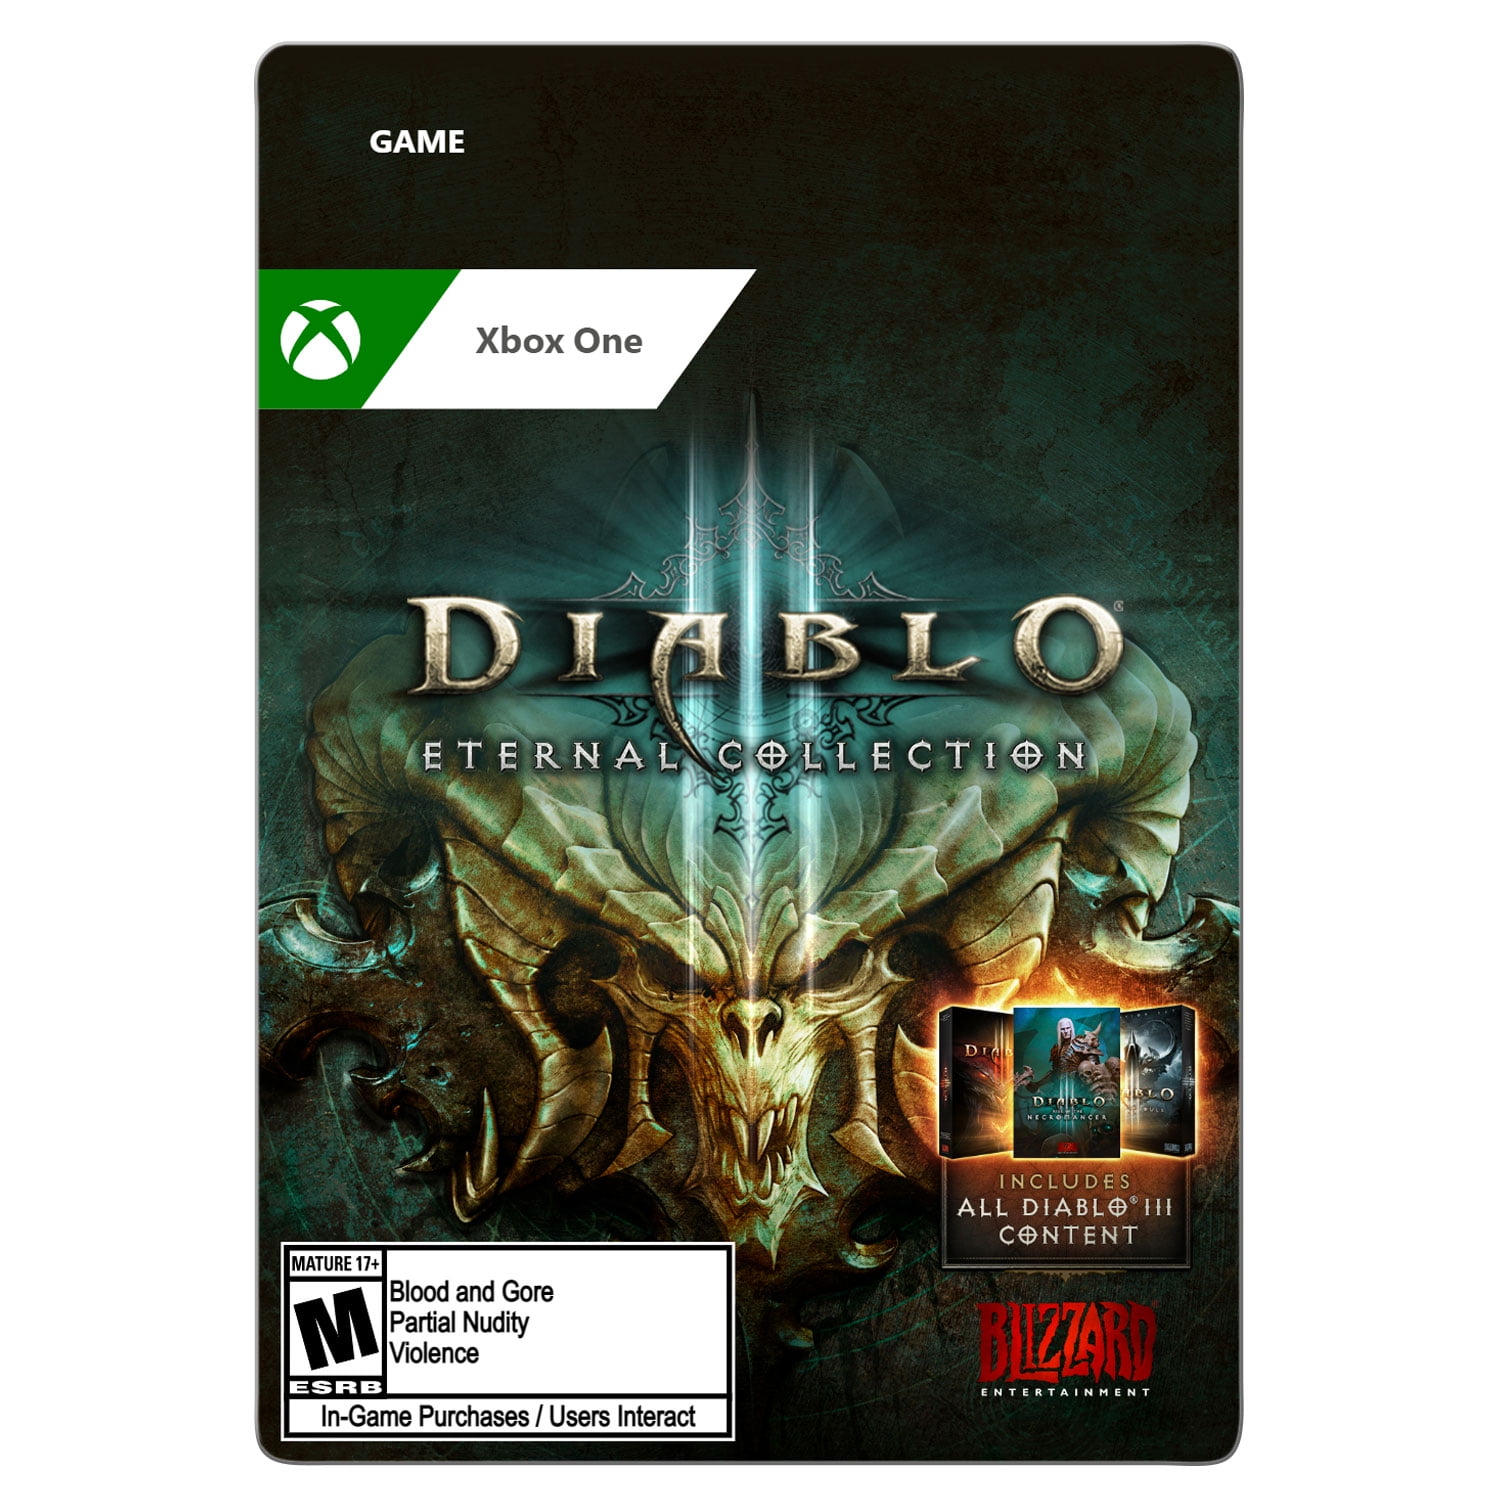 Diablo III 3 Cover Carton Box and Cd BOX Case only no Game Code